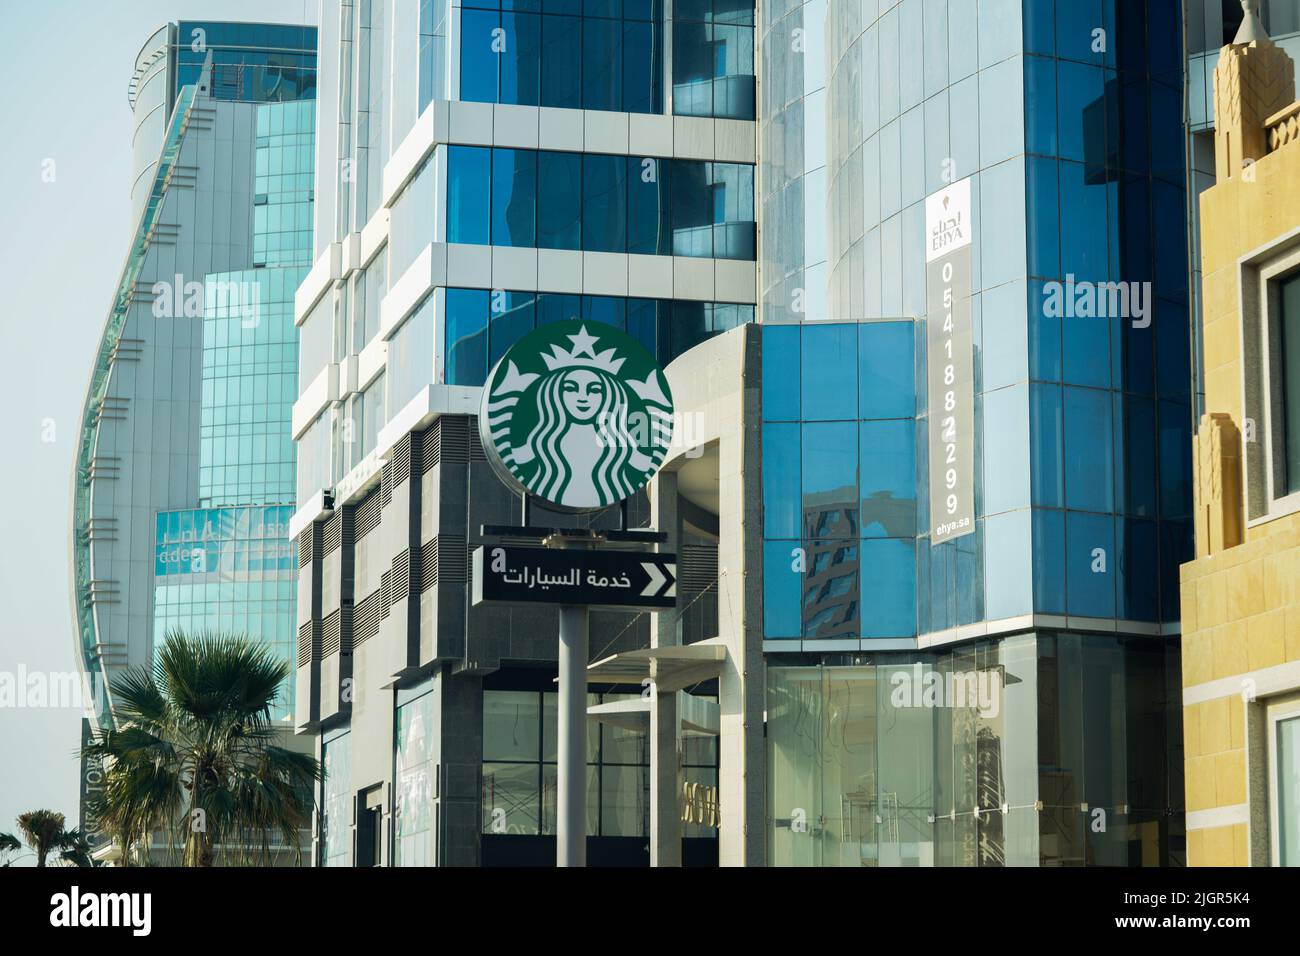 Arabisches Starbuck Drive-Thru-Schild, Starbucks-Schild in der Innenstadt. Stockfoto